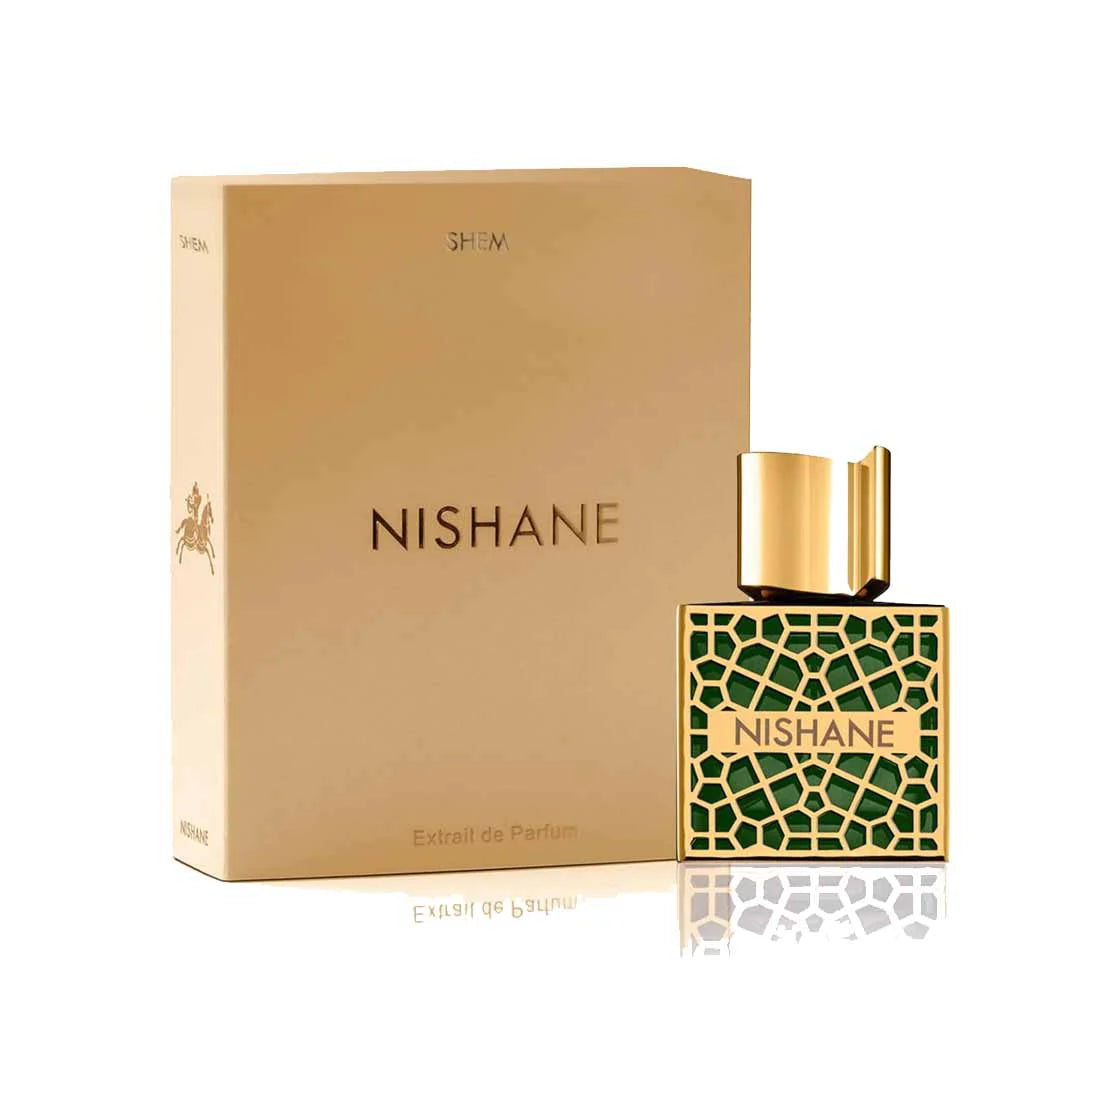 Nishane Shem  Extrait De Parfum